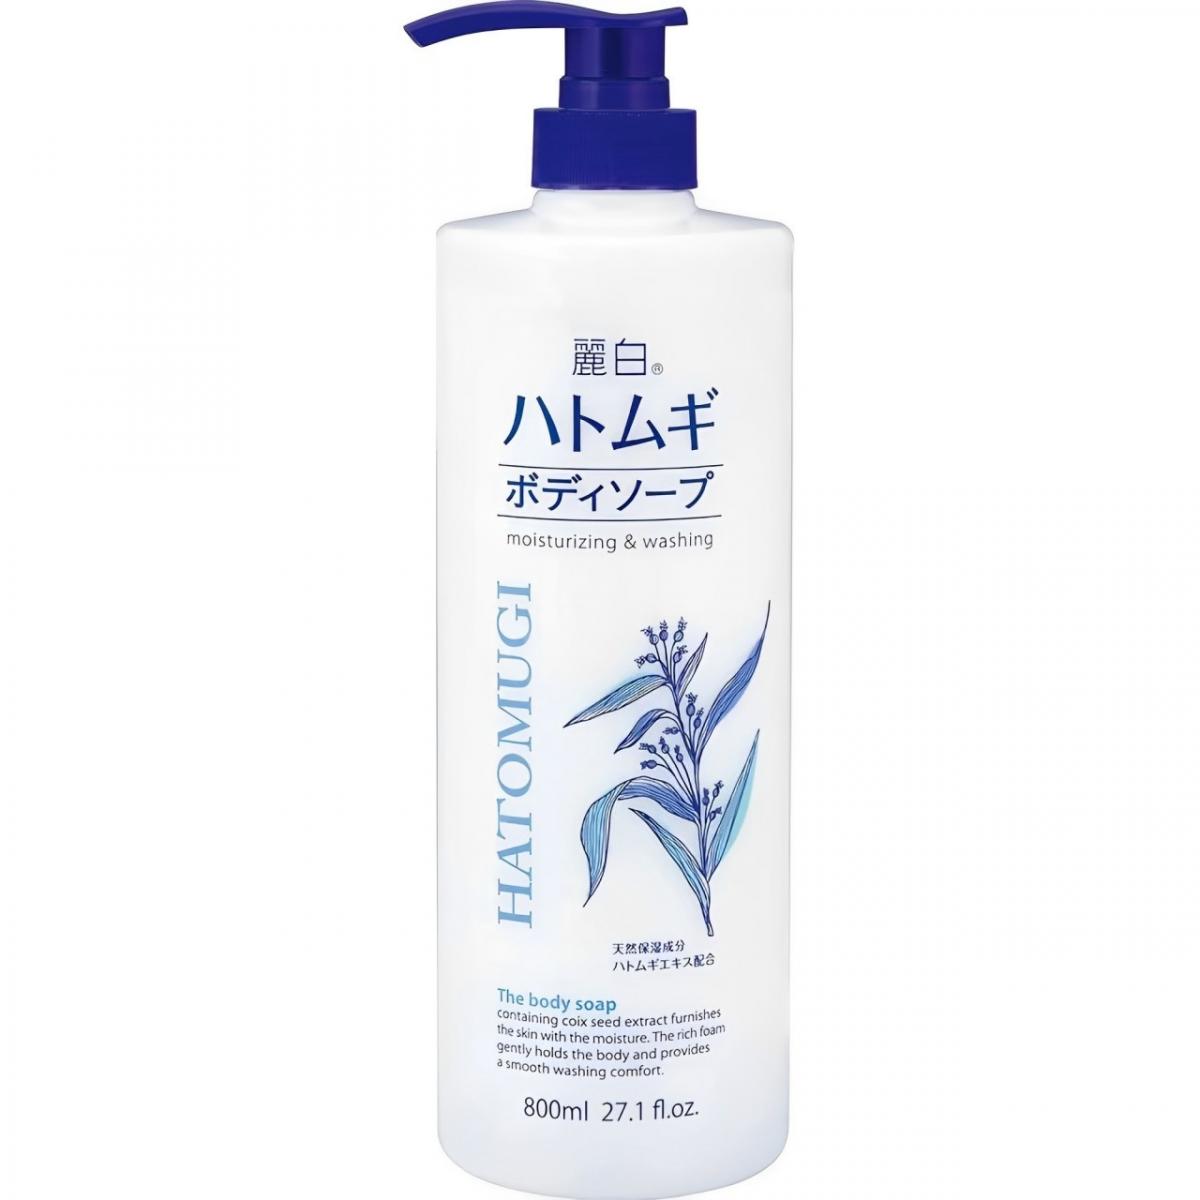 Hatomugi Moisturizing & Washing The Body Soap 800ml -27077(Parallel Import)